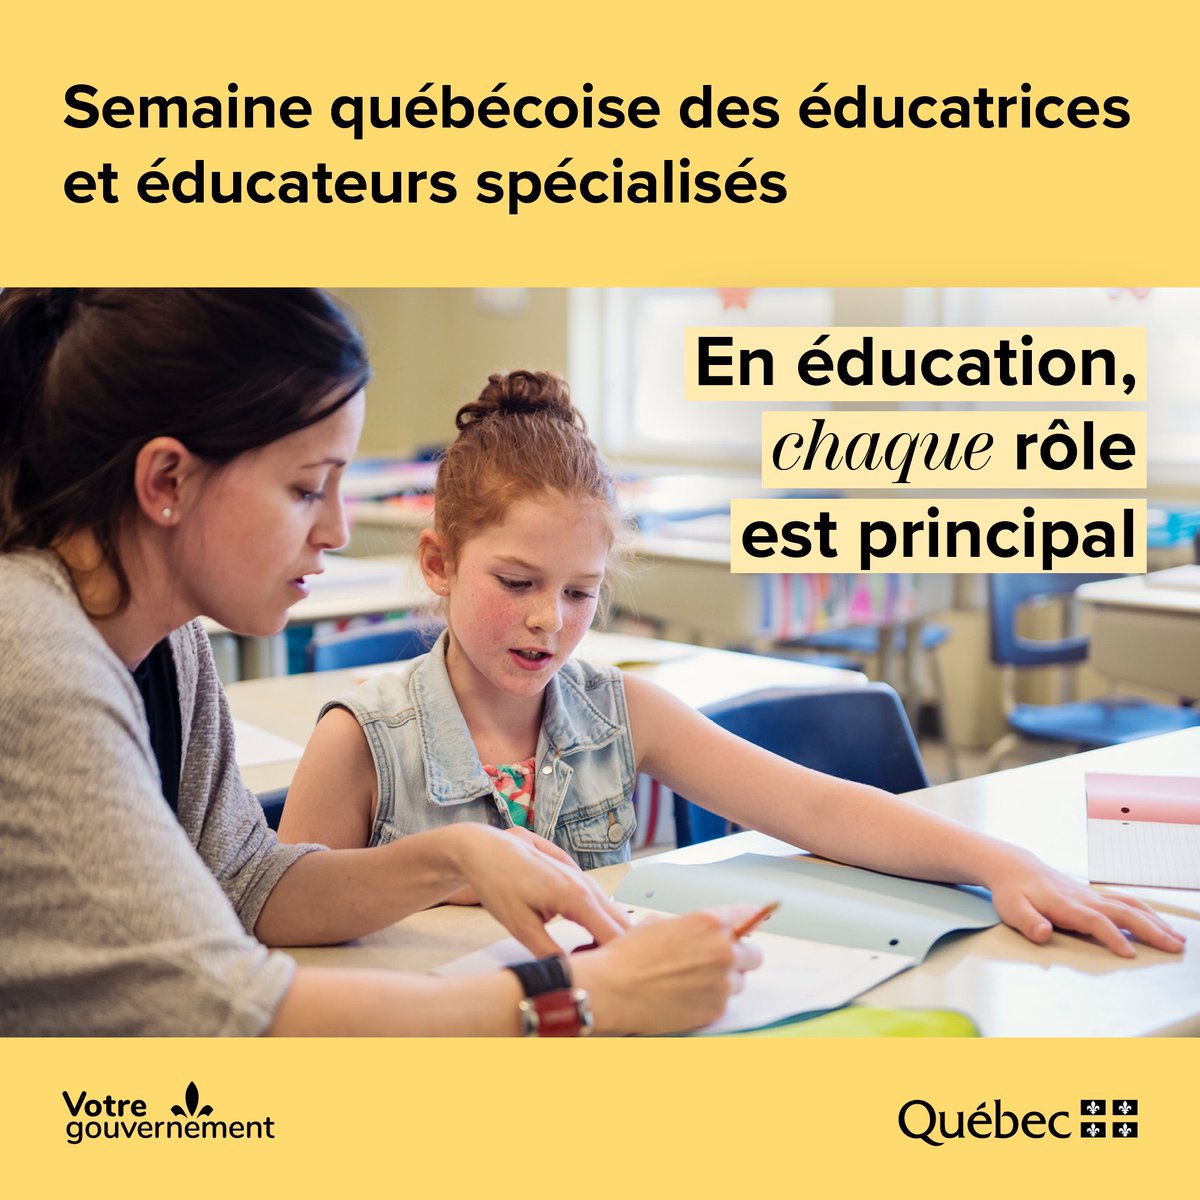 Du 7 au 13 avril se tient la semaine québécoise des éducatrices et éducateurs spécialisés.  Je suis toujours content de vous rencontrer pendant mes visites. Grâce à vous, plusieurs élèves ont de l’aide adaptée à leurs besoins. Vous êtes de précieux membres de l'équipe-école! 😊